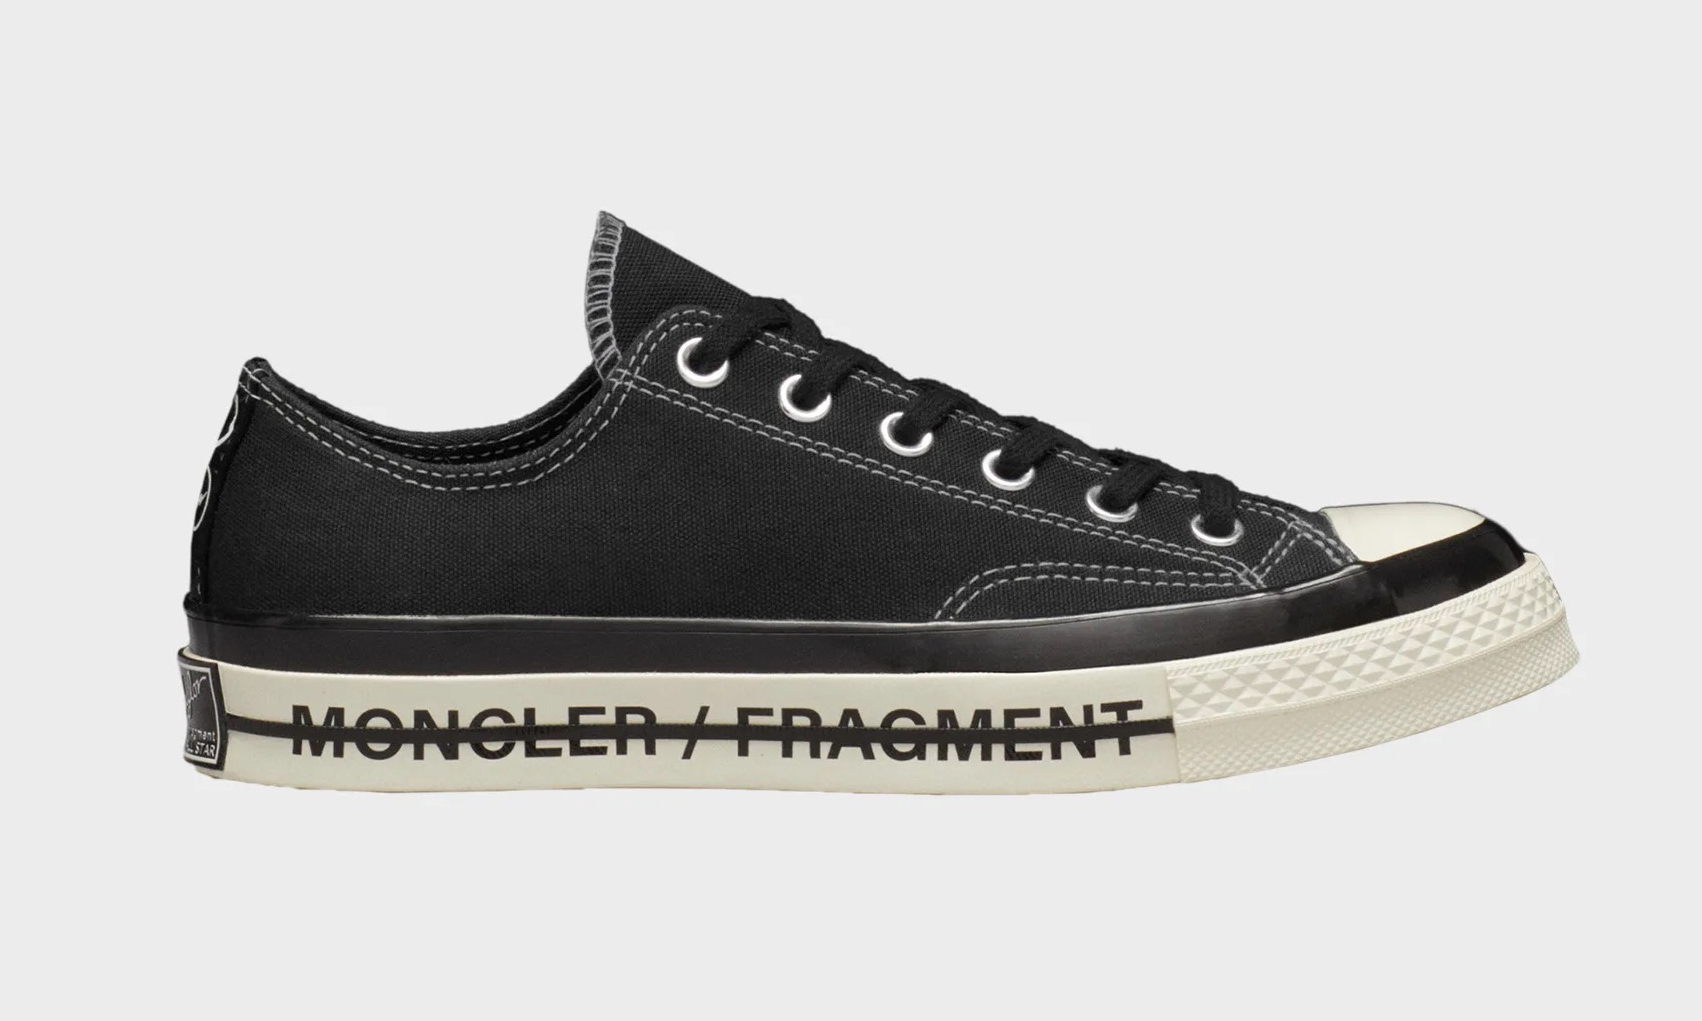 MONCLER x fragment design x CONVERSE 联名鞋款系列发布